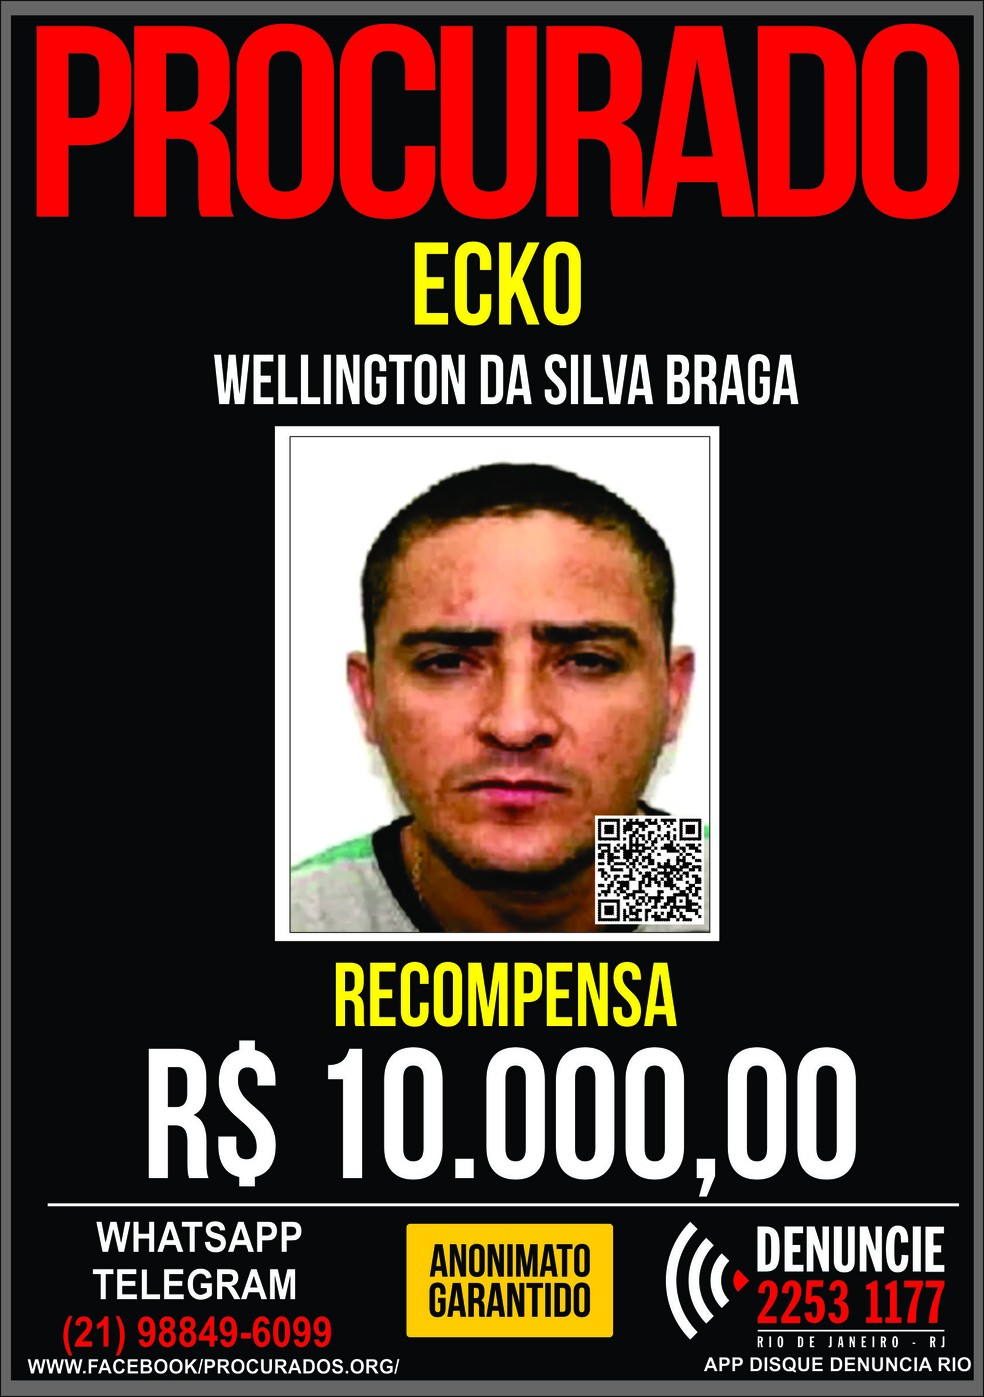 Disque Denúncia oferece recompensa por informações que levem à prisão de Ecko — Foto: Divulgação